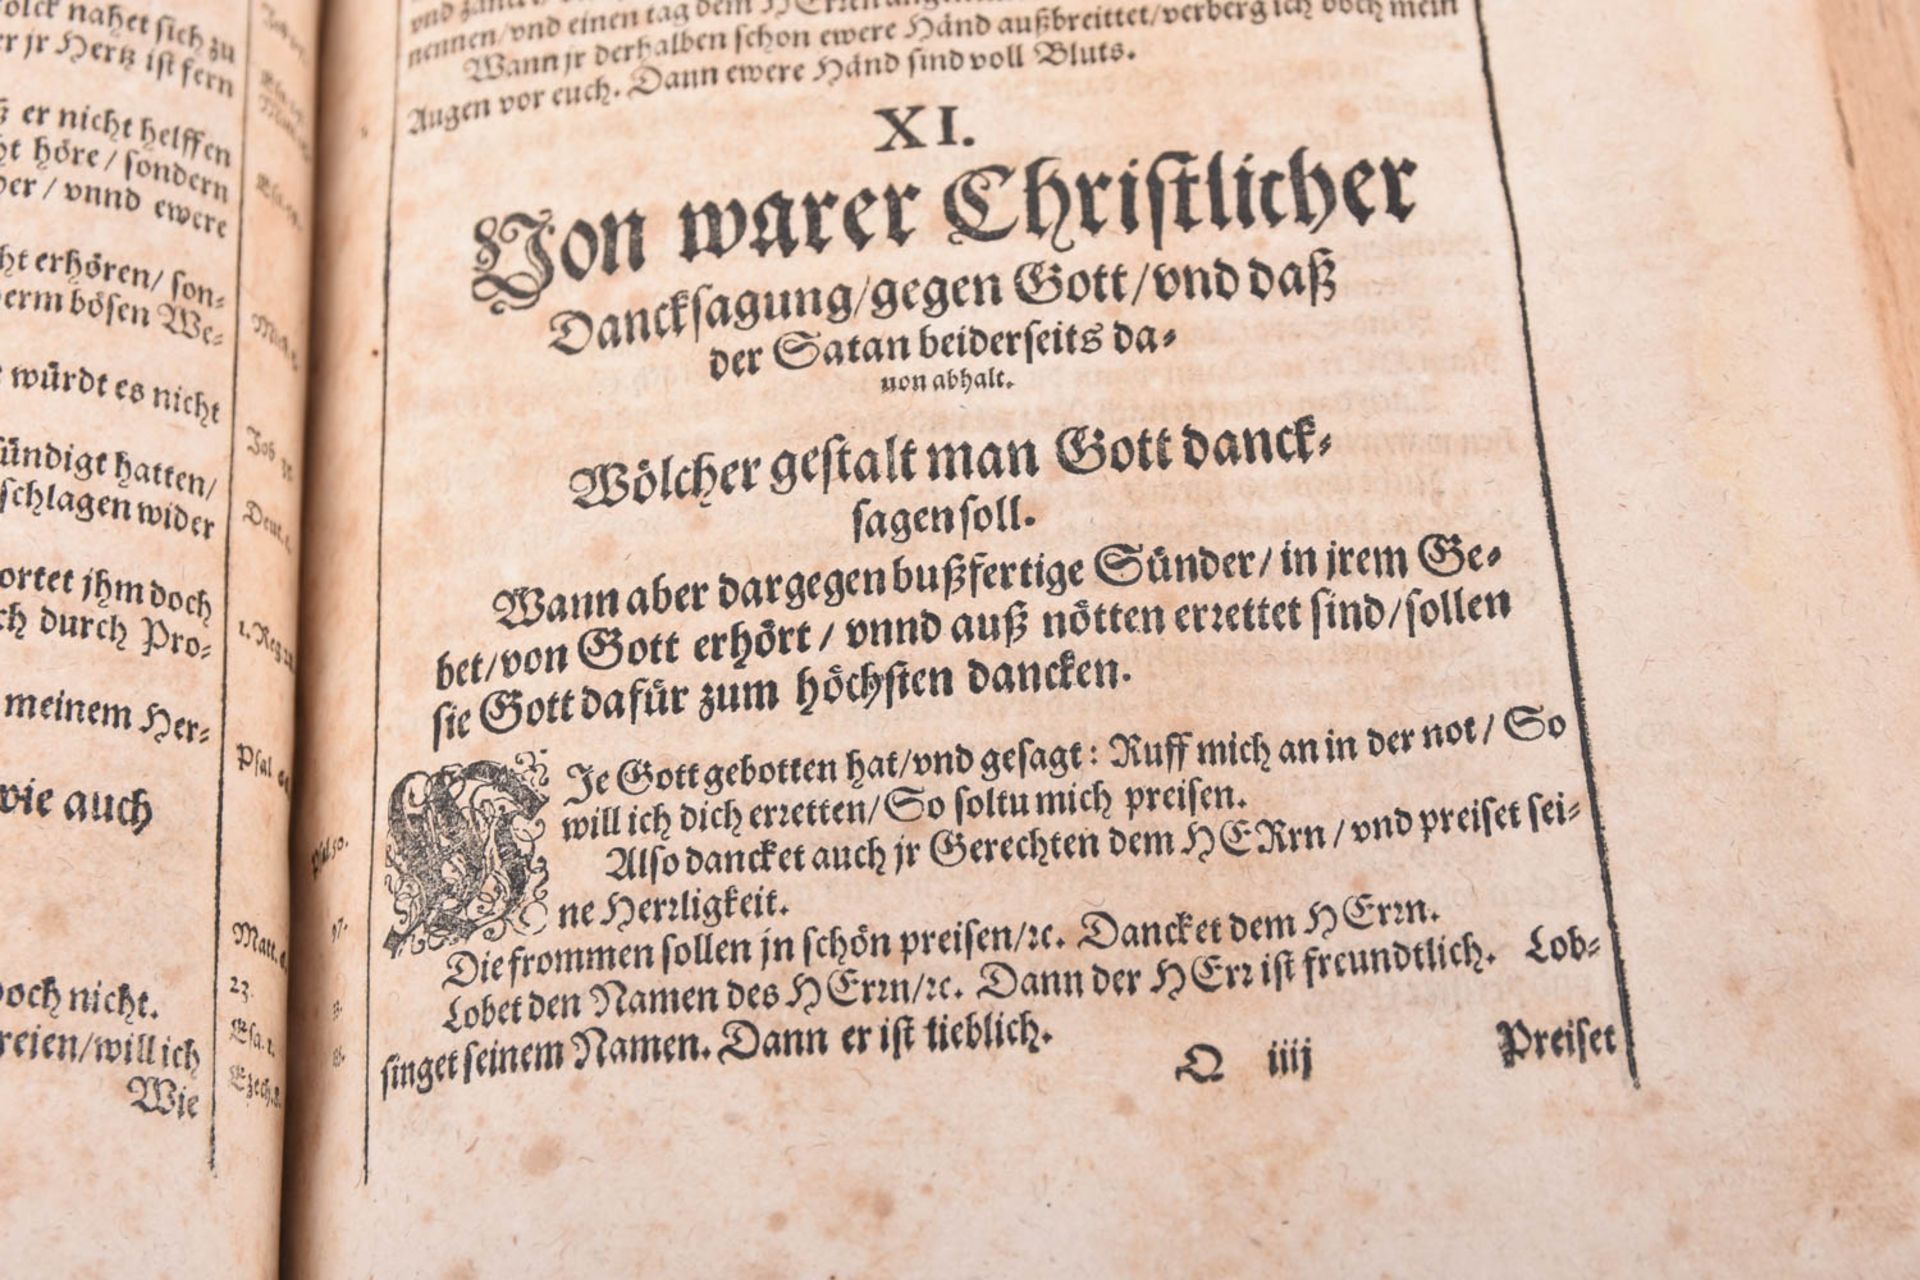 Schatzkammer heiliger Göttlicher Schrifft, 1563 - Image 11 of 15